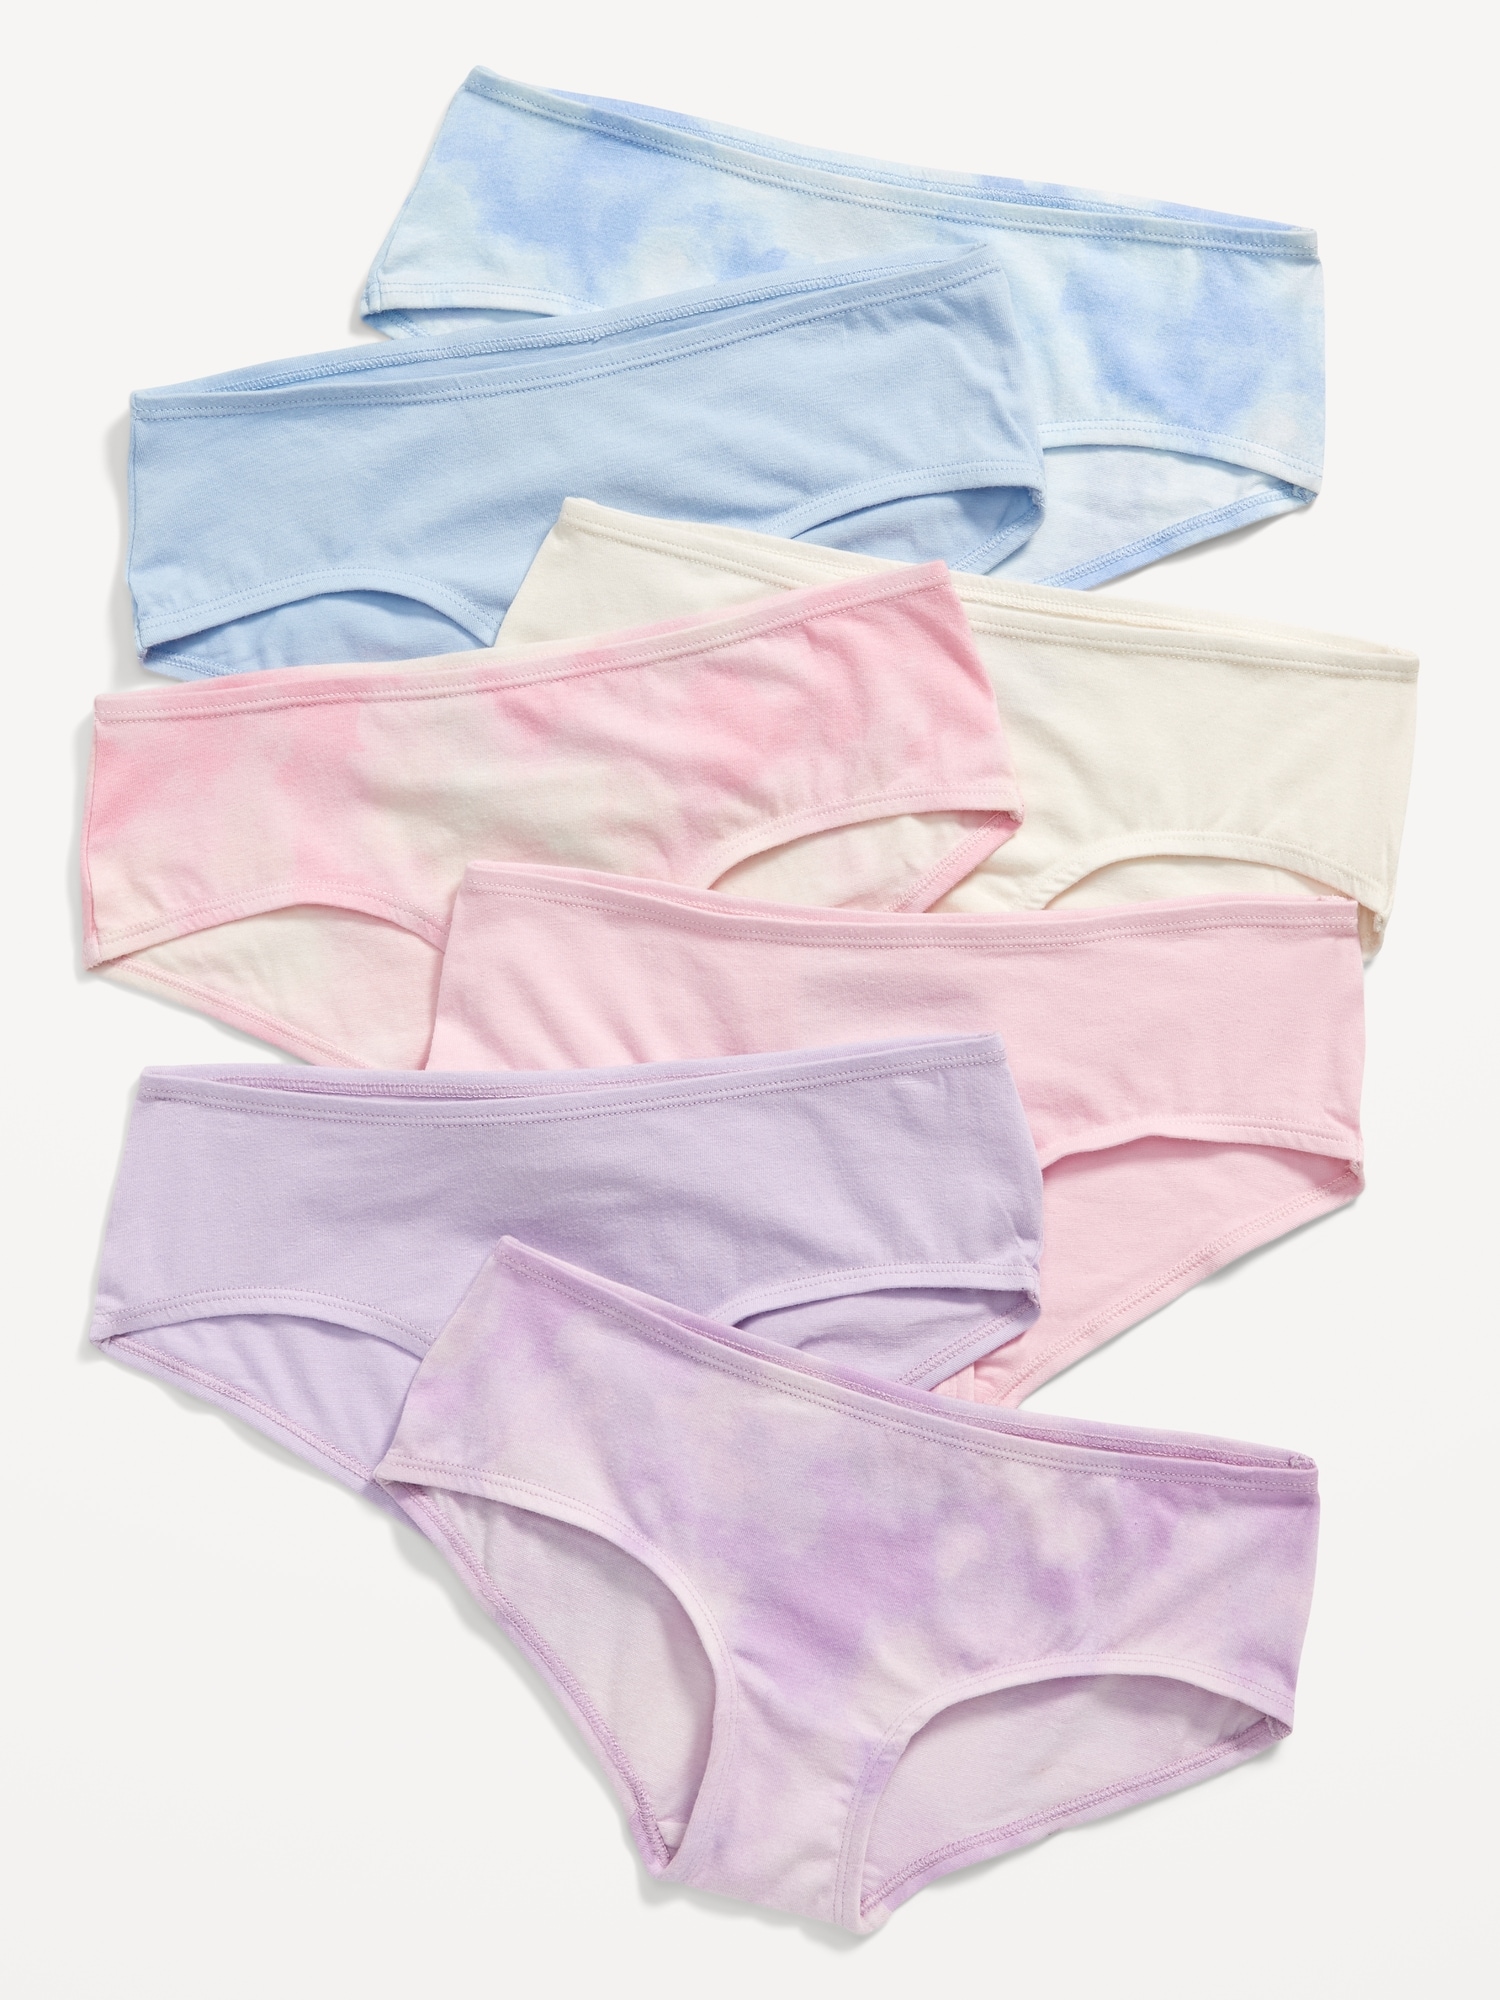 Girls Cotton Underwear